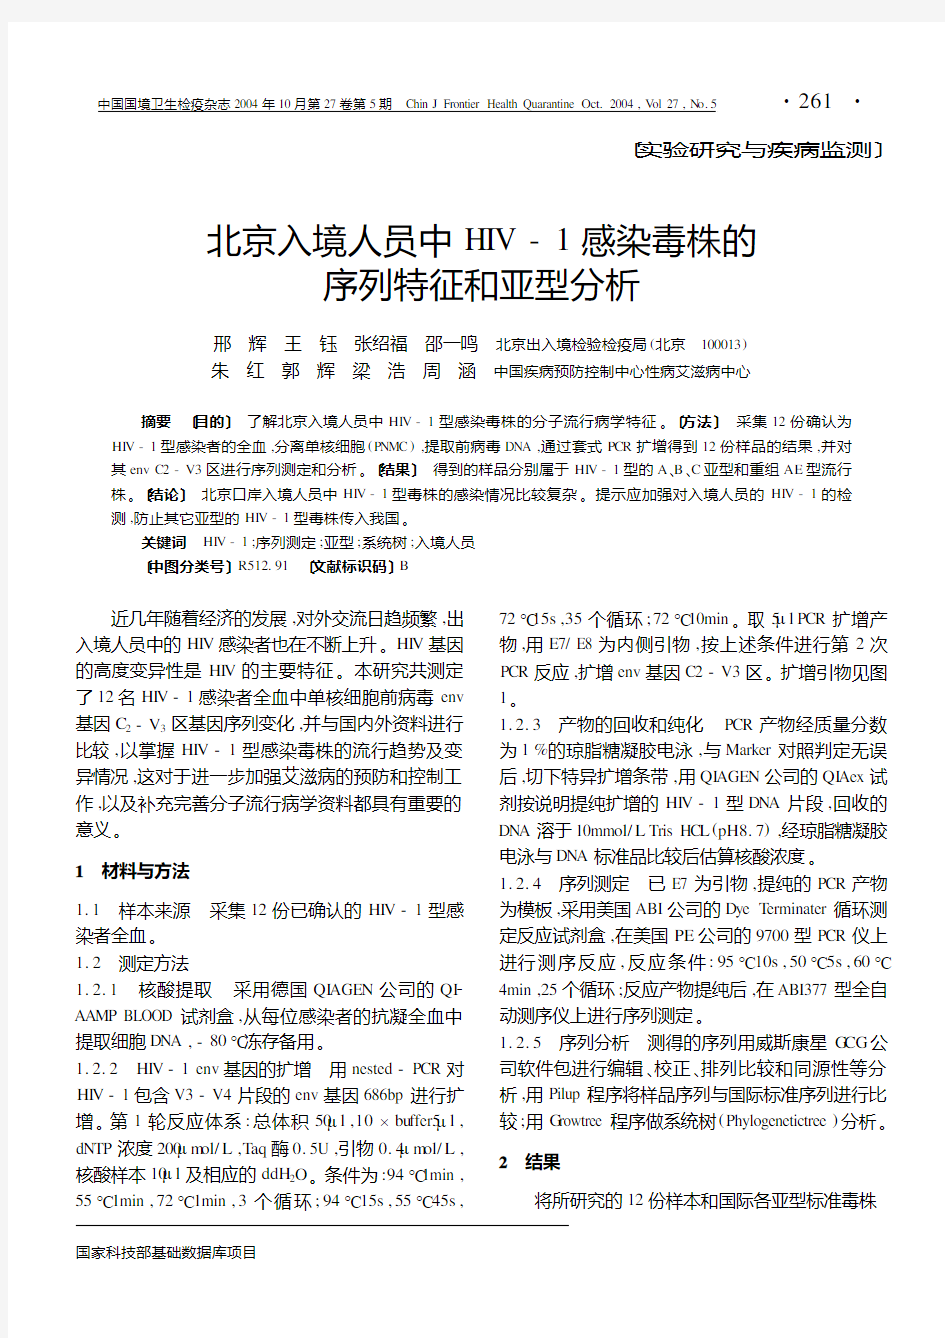 北京入境人员中HIV-1感染毒株的序列特征和亚型分析